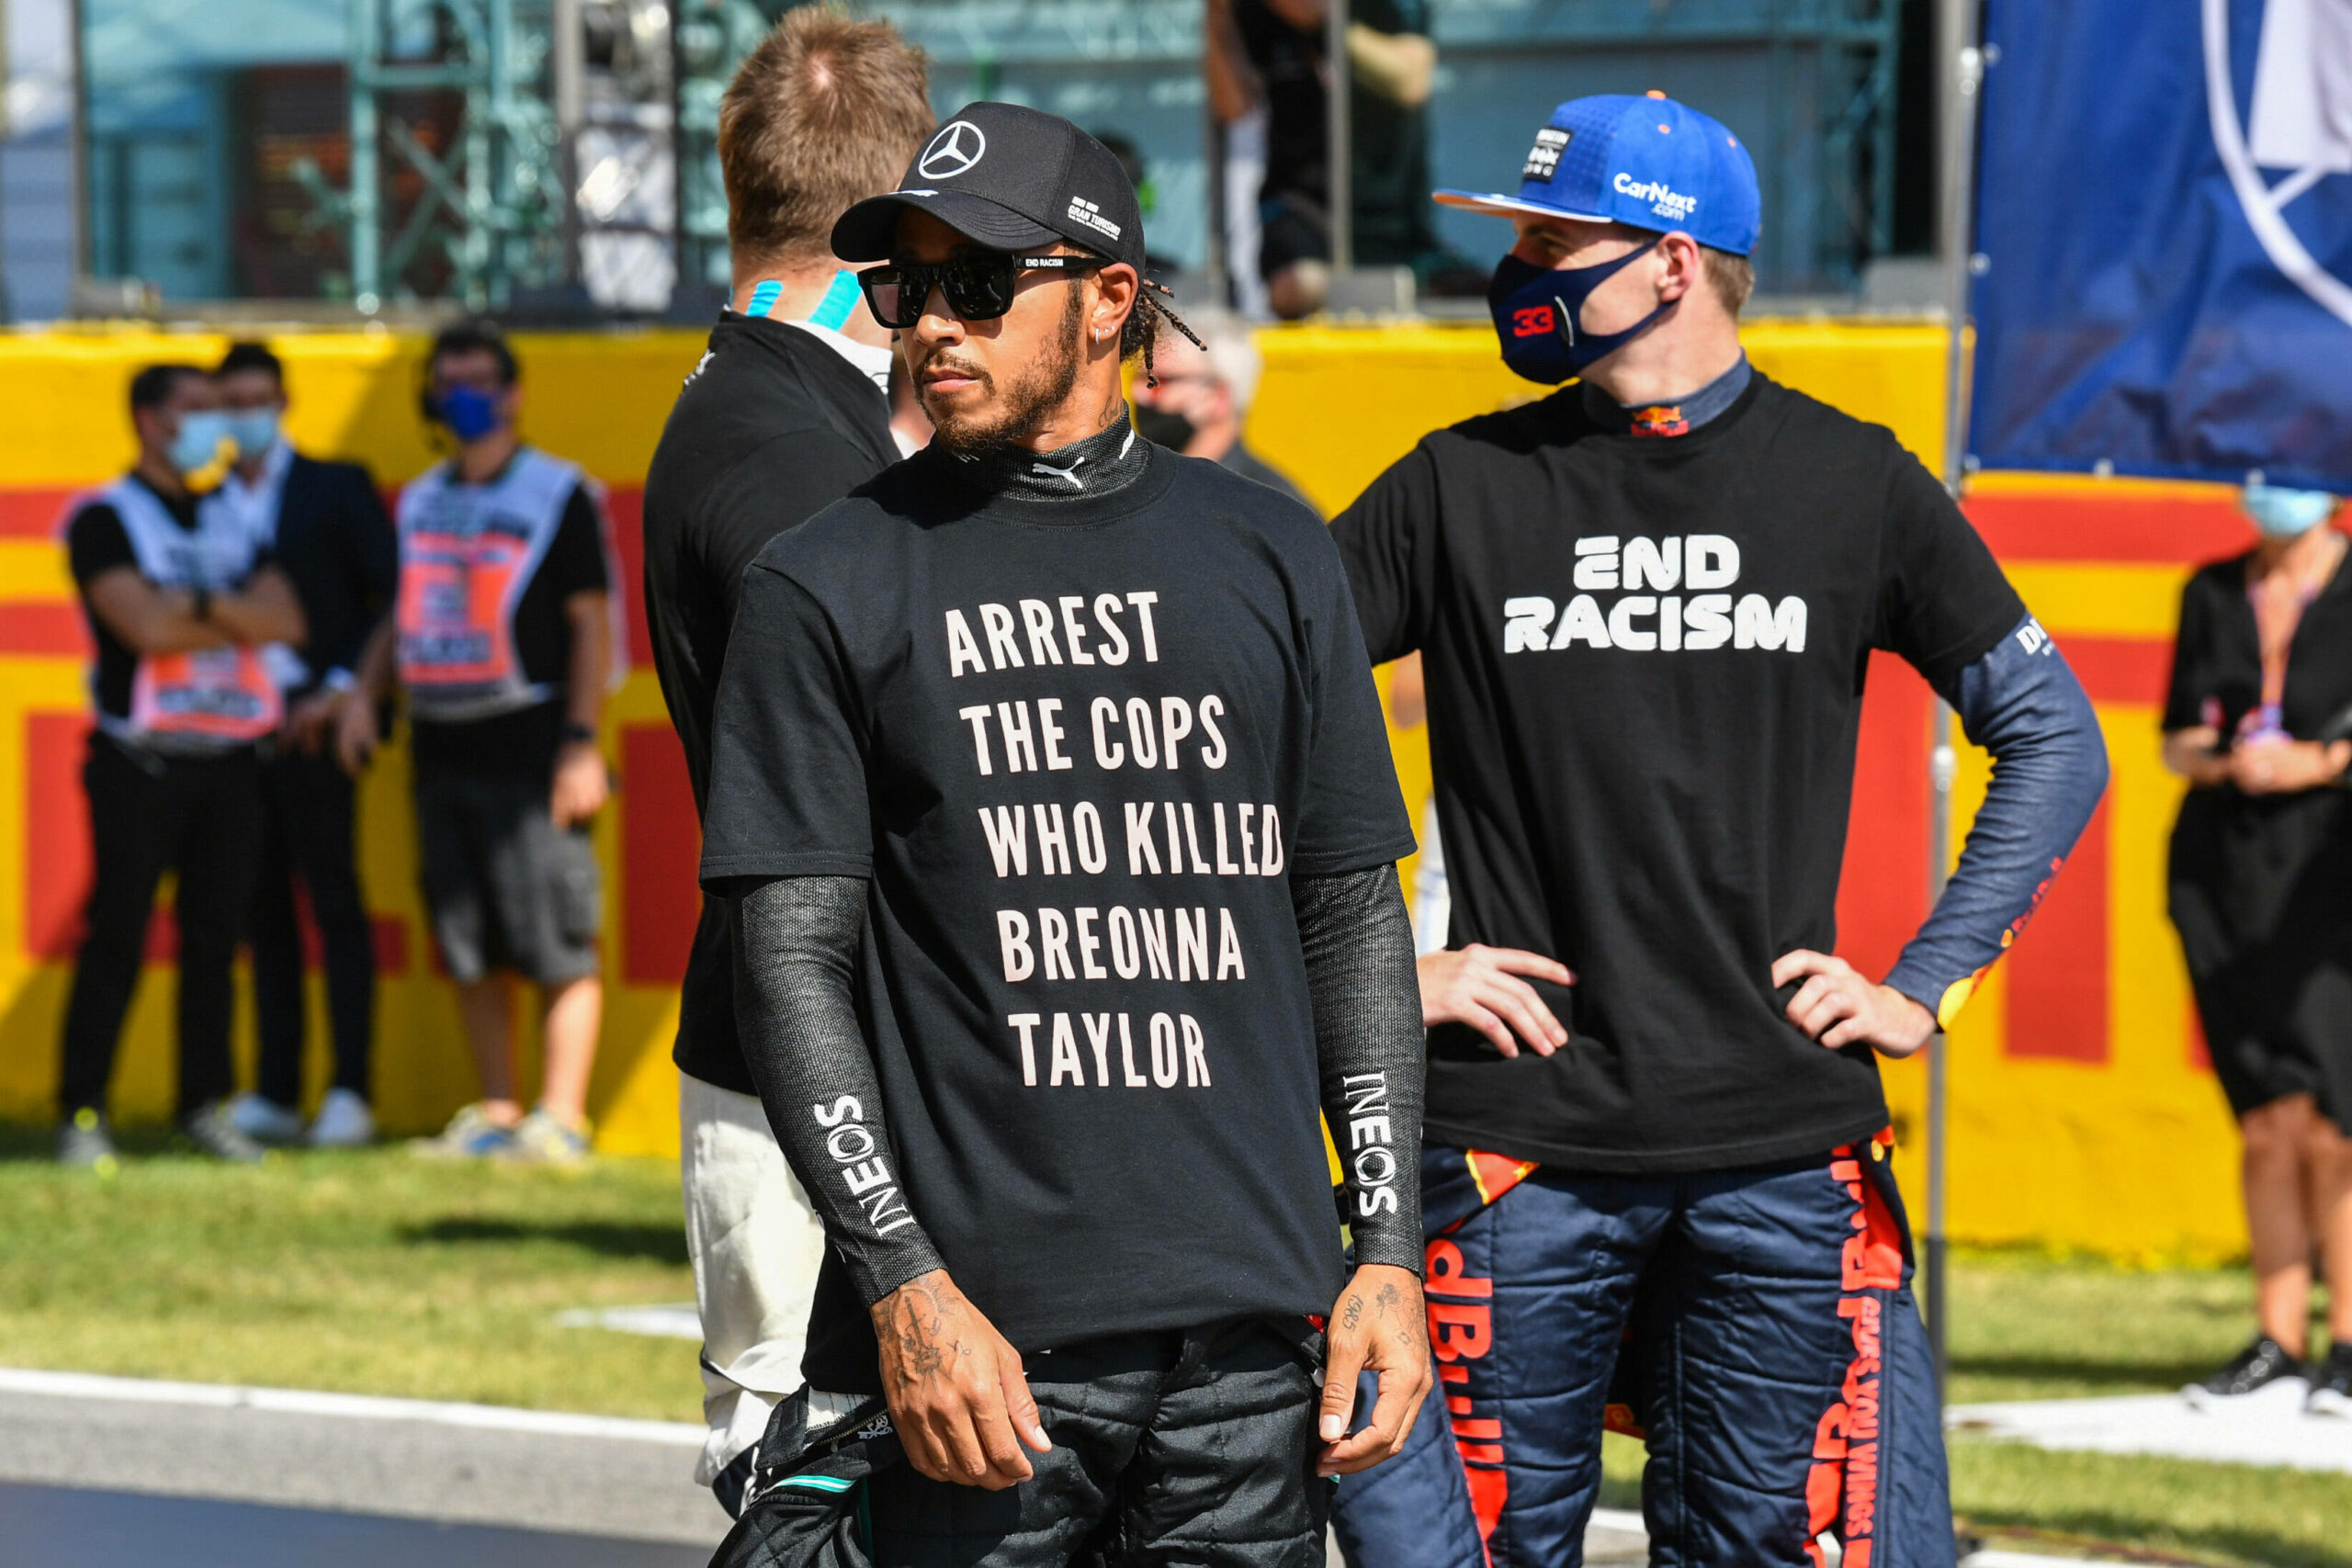 Lewis Hamilton und Max Verstappen protestieren im Jahr 2020 in Mugello gegen Rassismus.